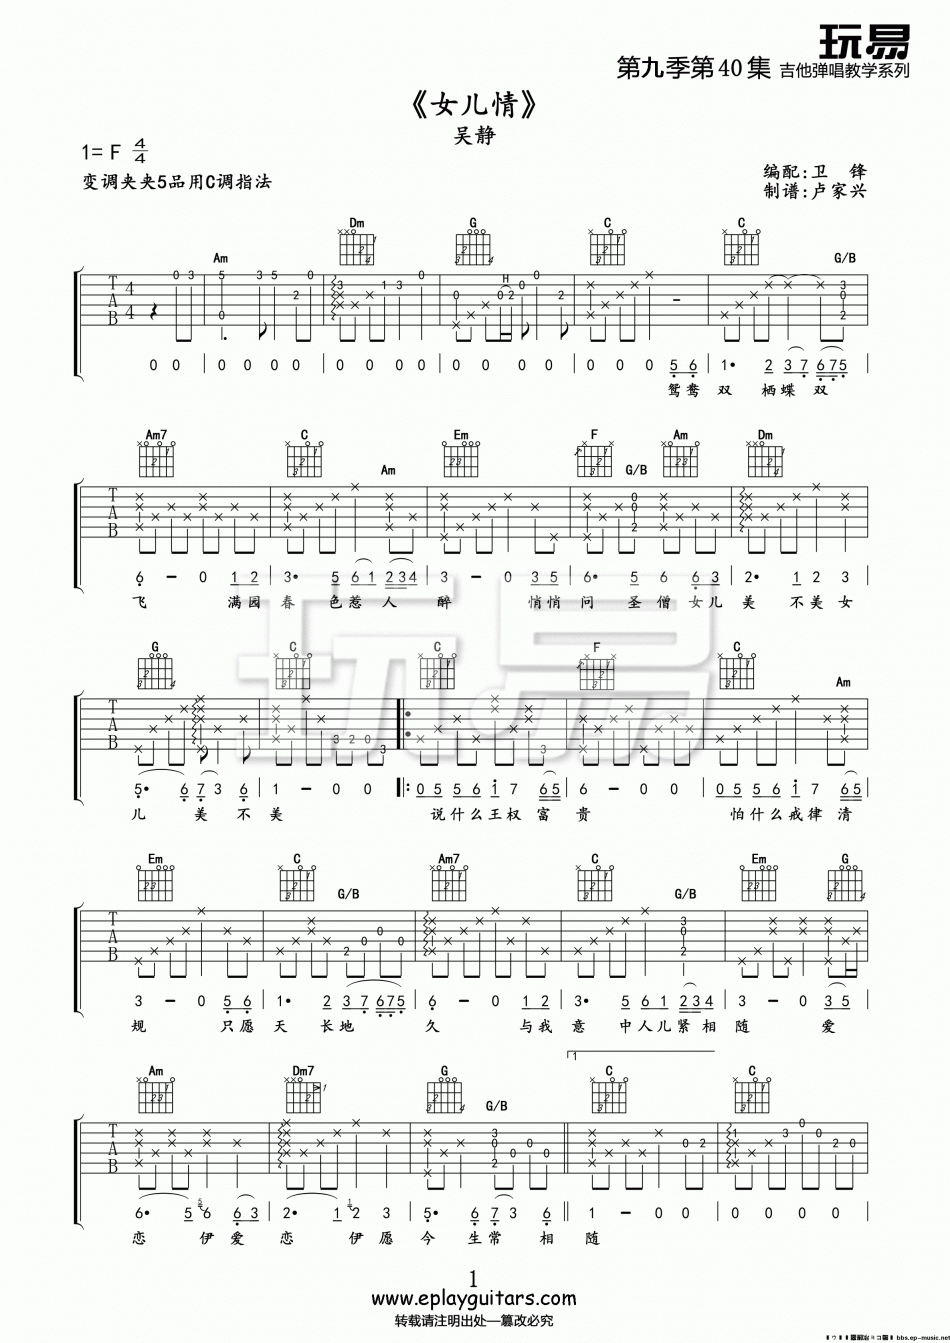 吴静《女儿情》吉他谱-Guitar Music Score